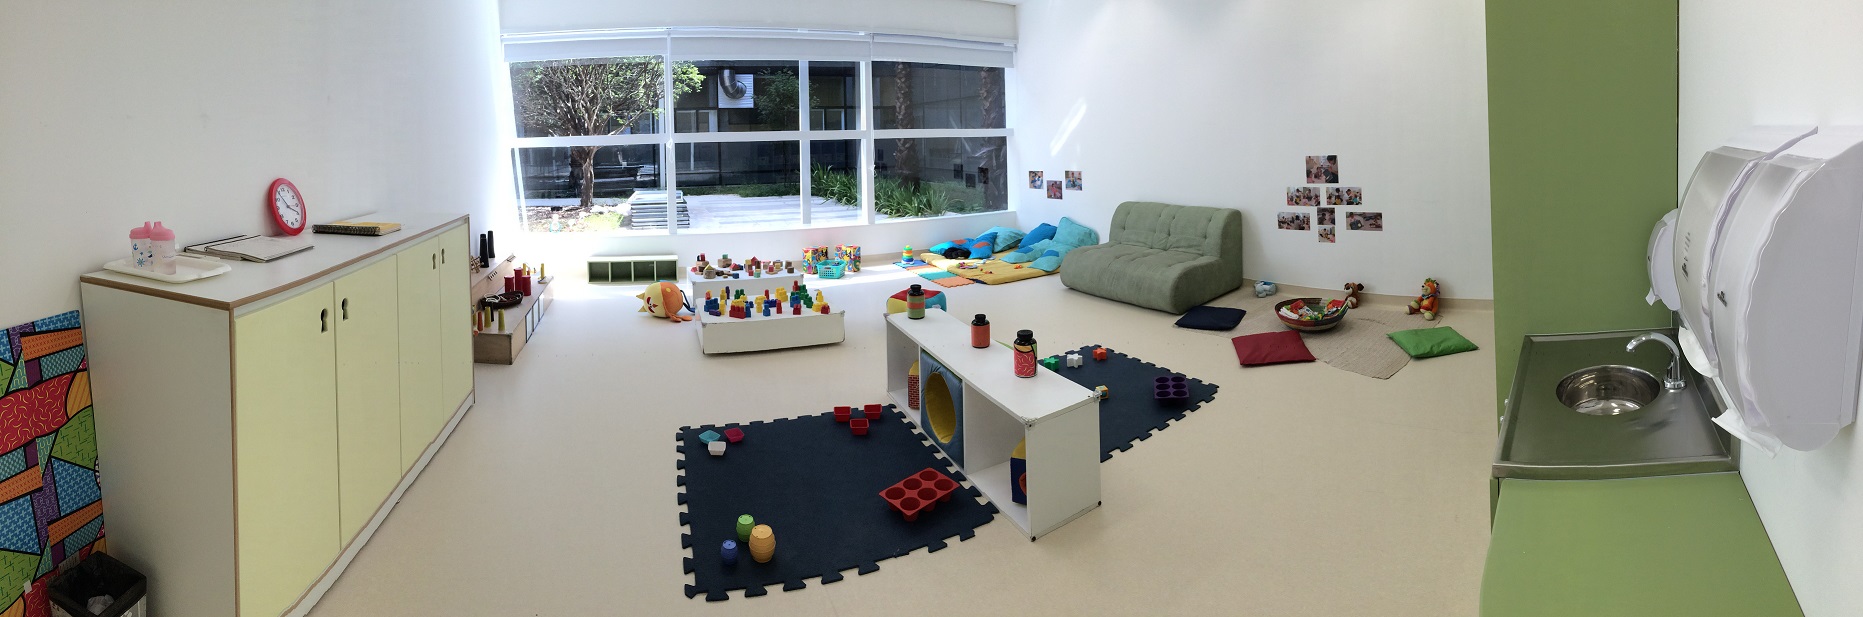 Foto em estilo panorâmico de uma sala reservada para ser o berçário. Há um sofá e vários brinquedos no chão.